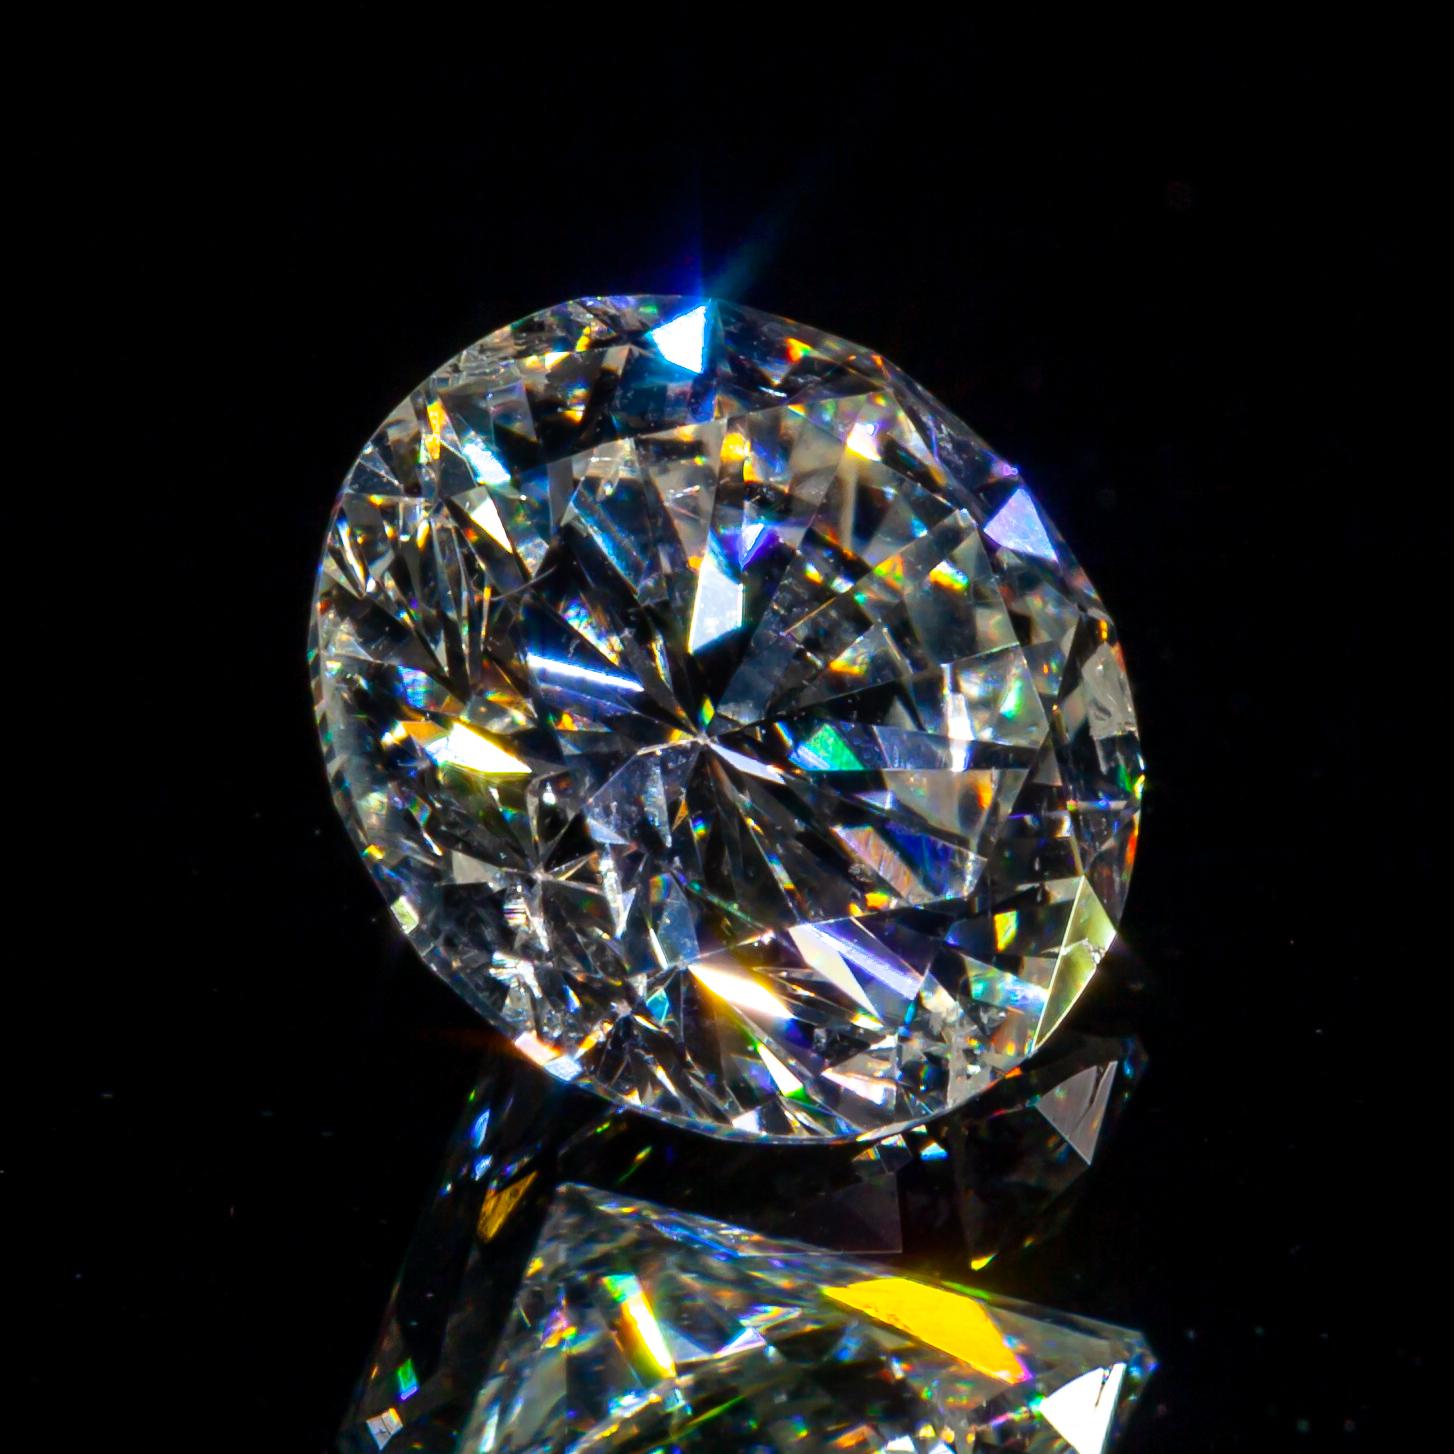 1.22 Carat Loose H / I1 Round Brilliant Cut Diamond GIA Certified (en anglais)

Informations générales sur le diamant
Taille du diamant : Brilliante ronde
Dimensions : 6.90  x  6.86  -  4.15

Résultats de la classification des diamants
Poids en